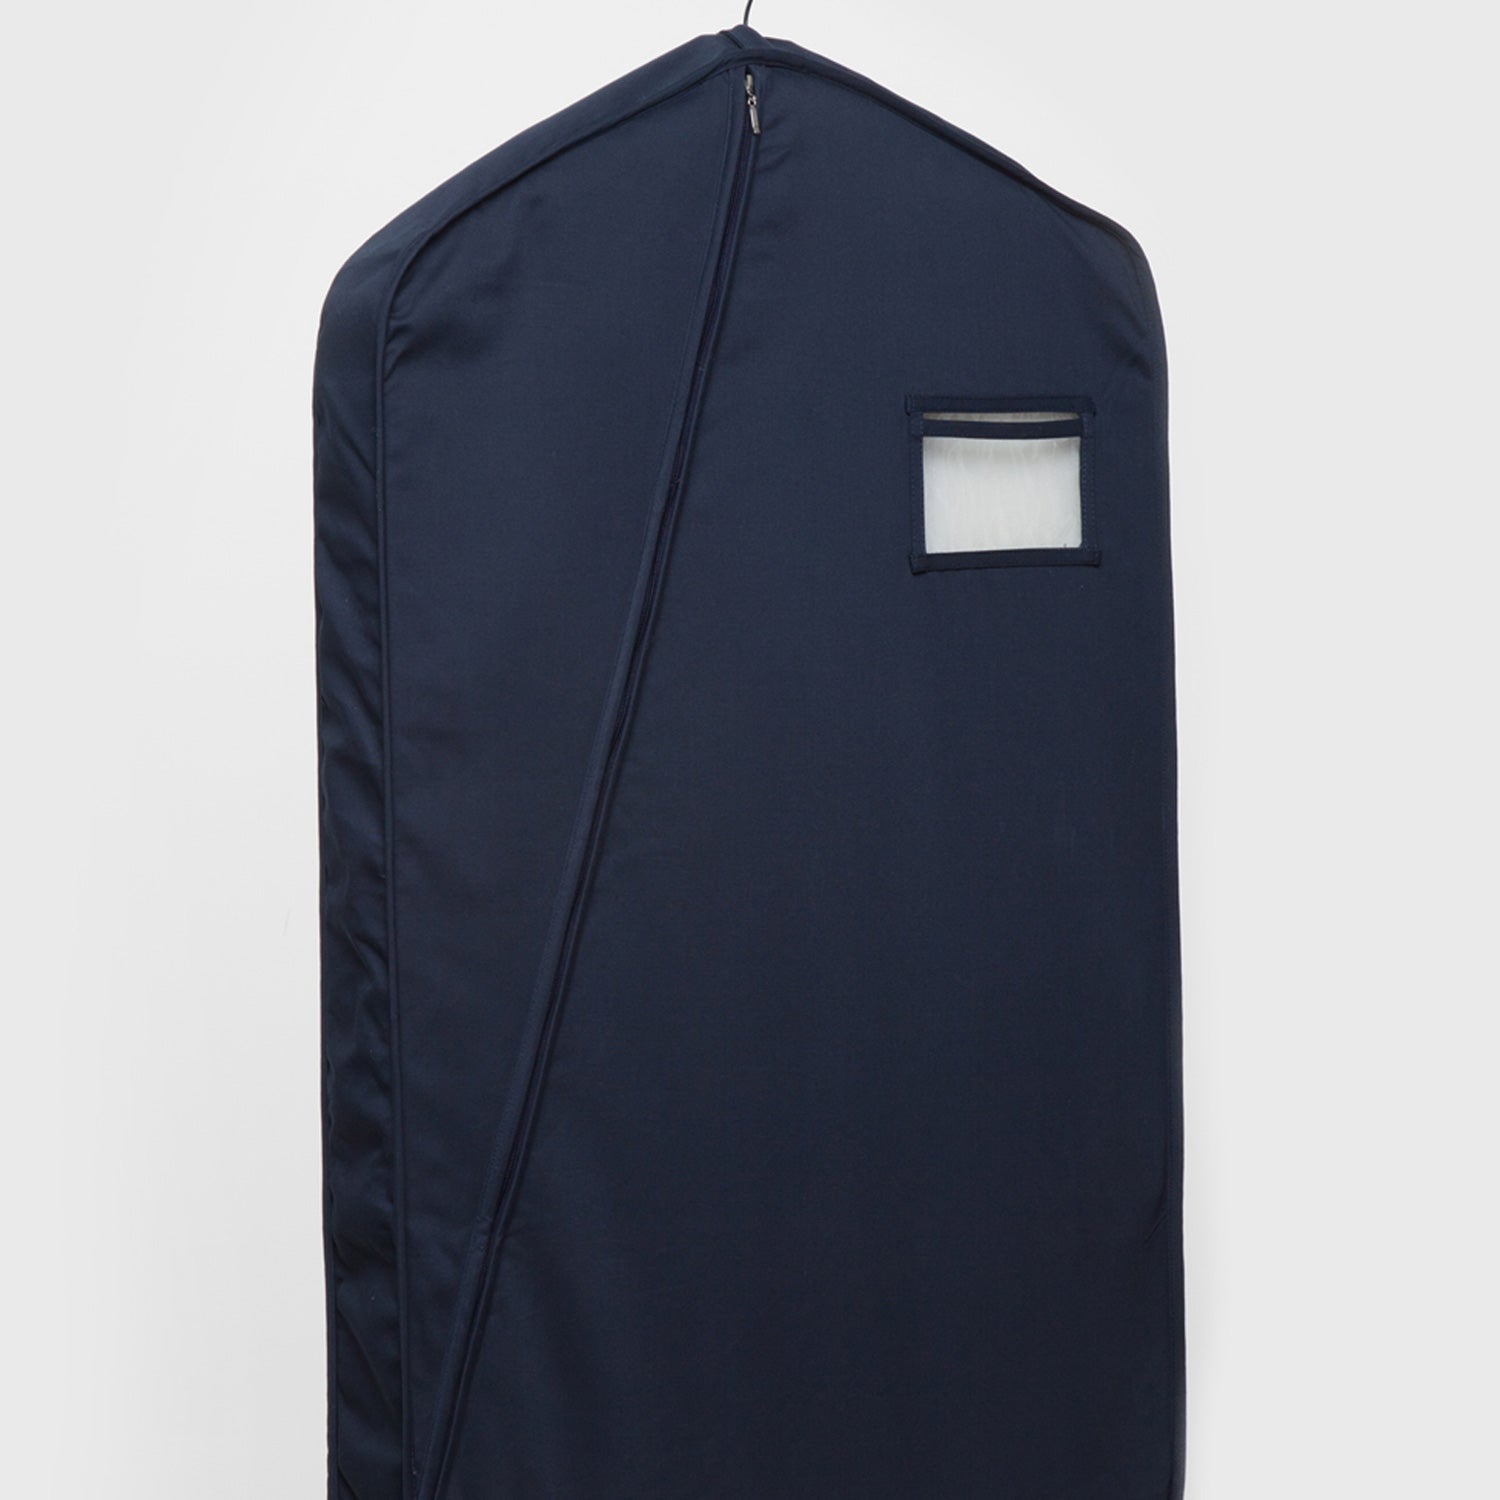 Lancman Business suit bag, travel bag. – LANCMAN BAGS